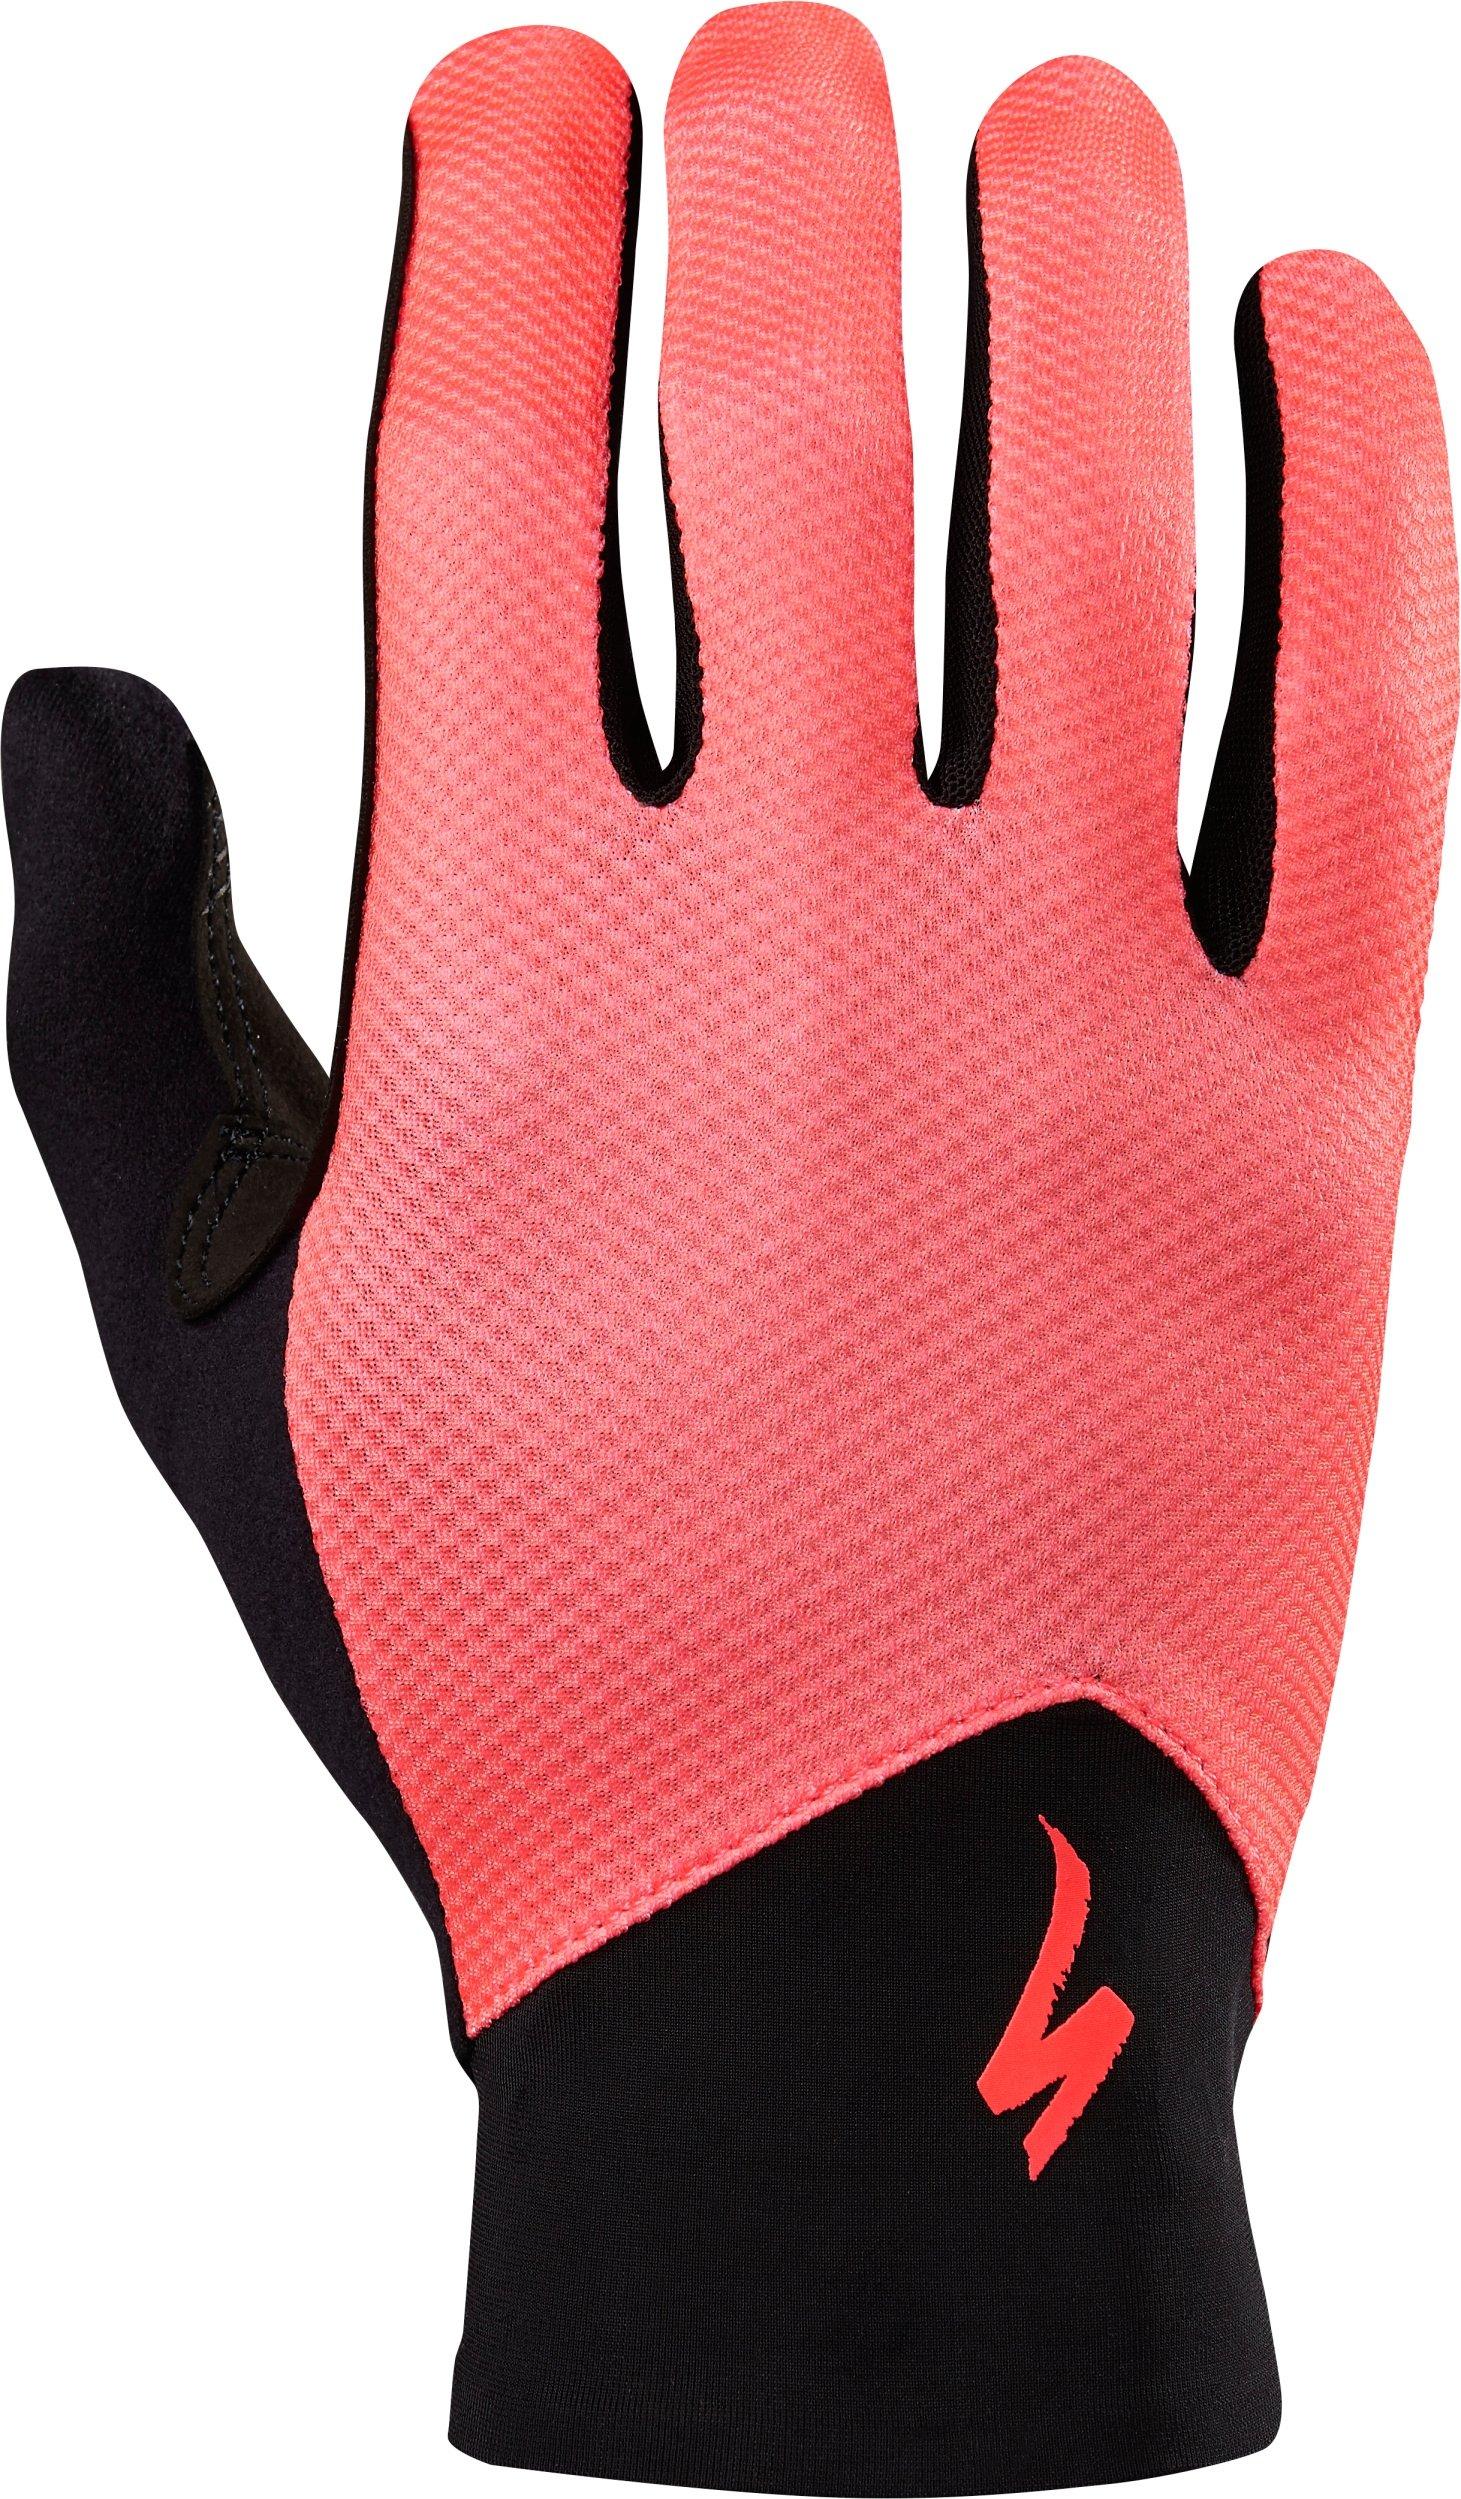 Renegade Gloves | Specialized.com